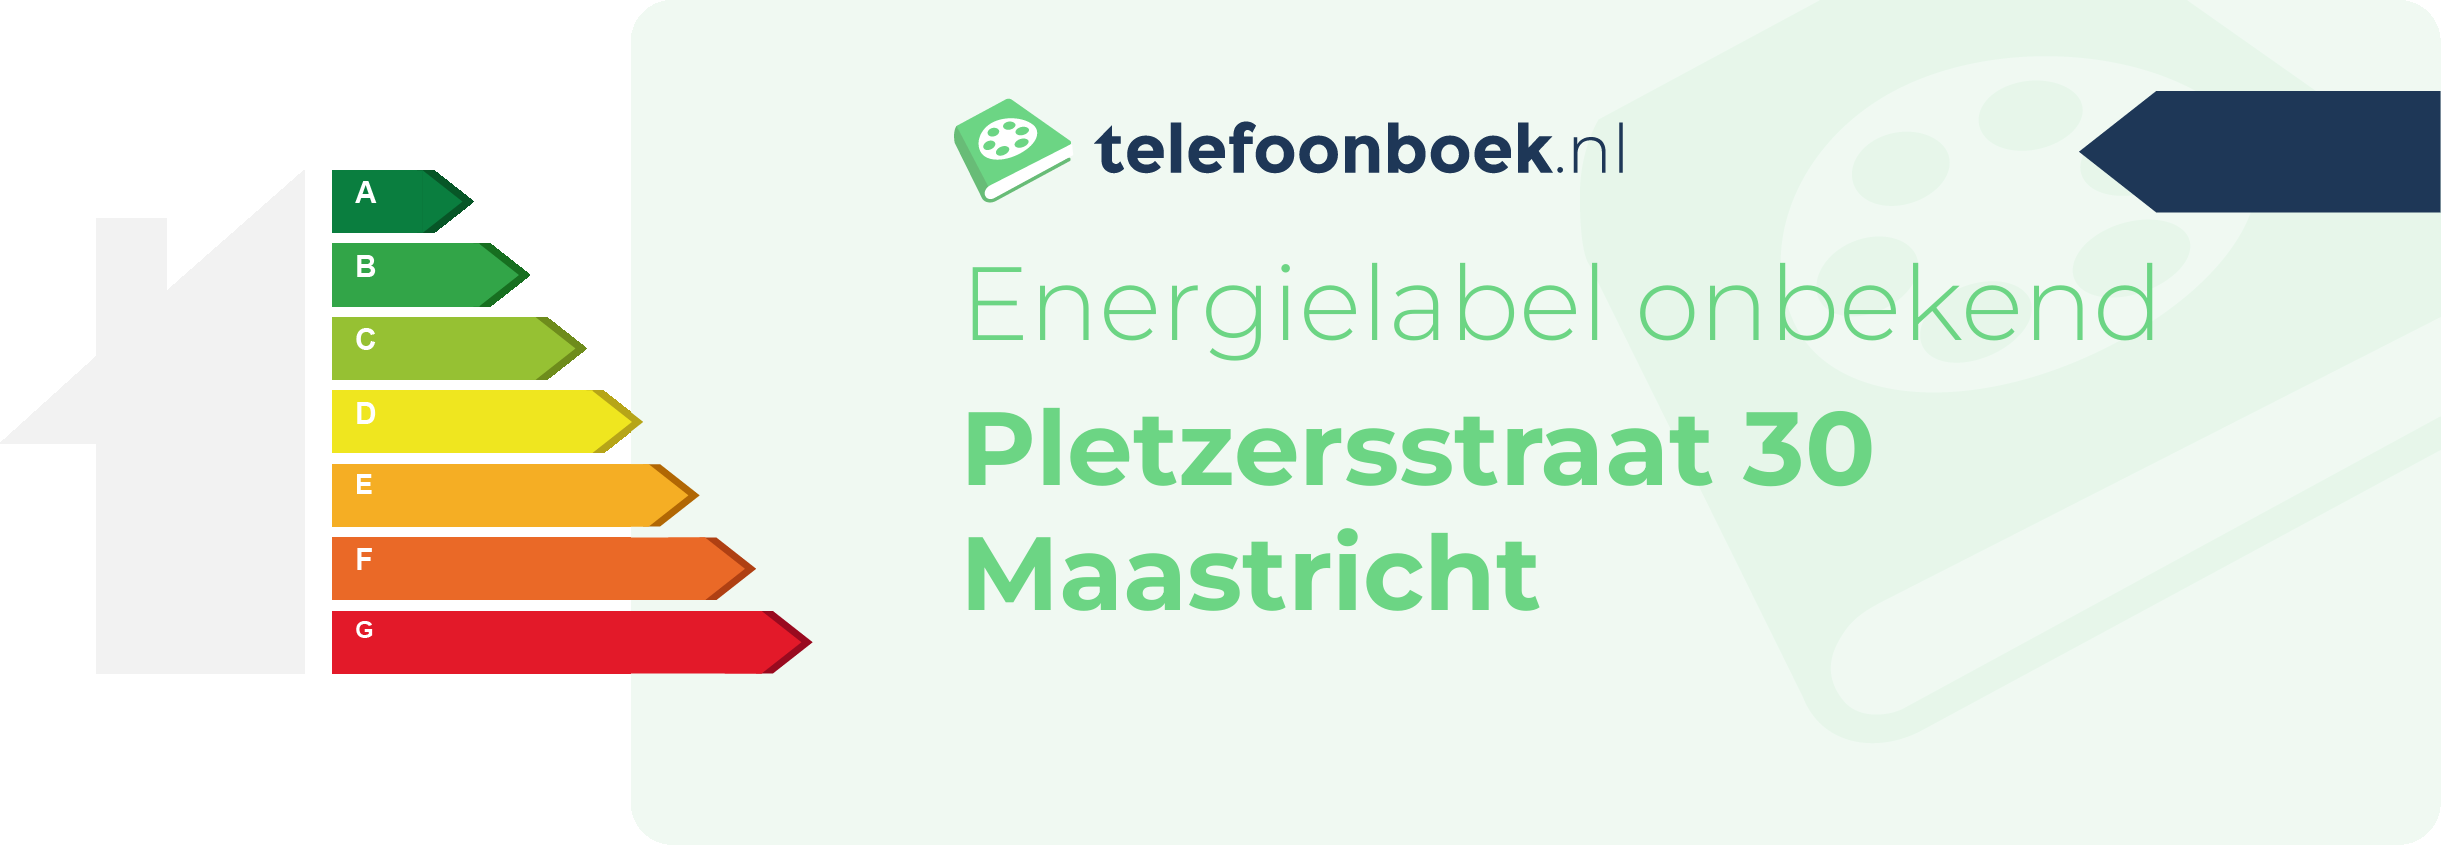 Energielabel Pletzersstraat 30 Maastricht